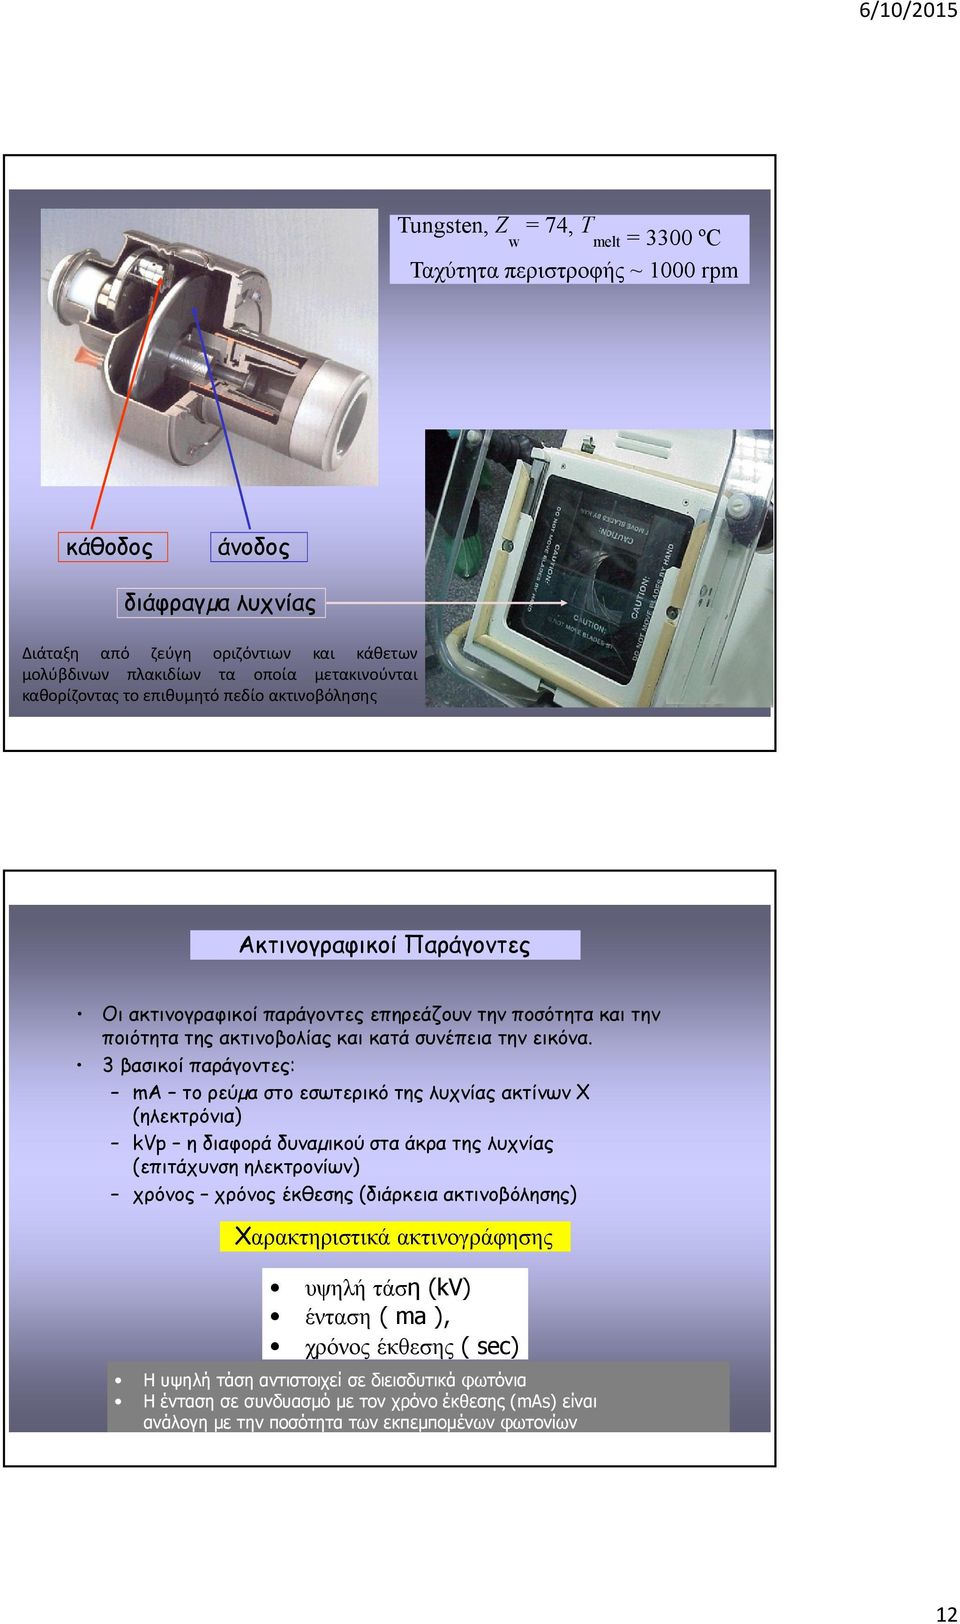 3 βασικοί παράγοντες: ma το ρεύµα στο εσωτερικό της λυχνίας ακτίνων Χ (ηλεκτρόνια) kvp ηδιαφοράδυναµικού στα άκρα της λυχνίας (επιτάχυνση ηλεκτρονίων) χρόνος χρόνος έκθεσης (διάρκεια ακτινοβόλησης)